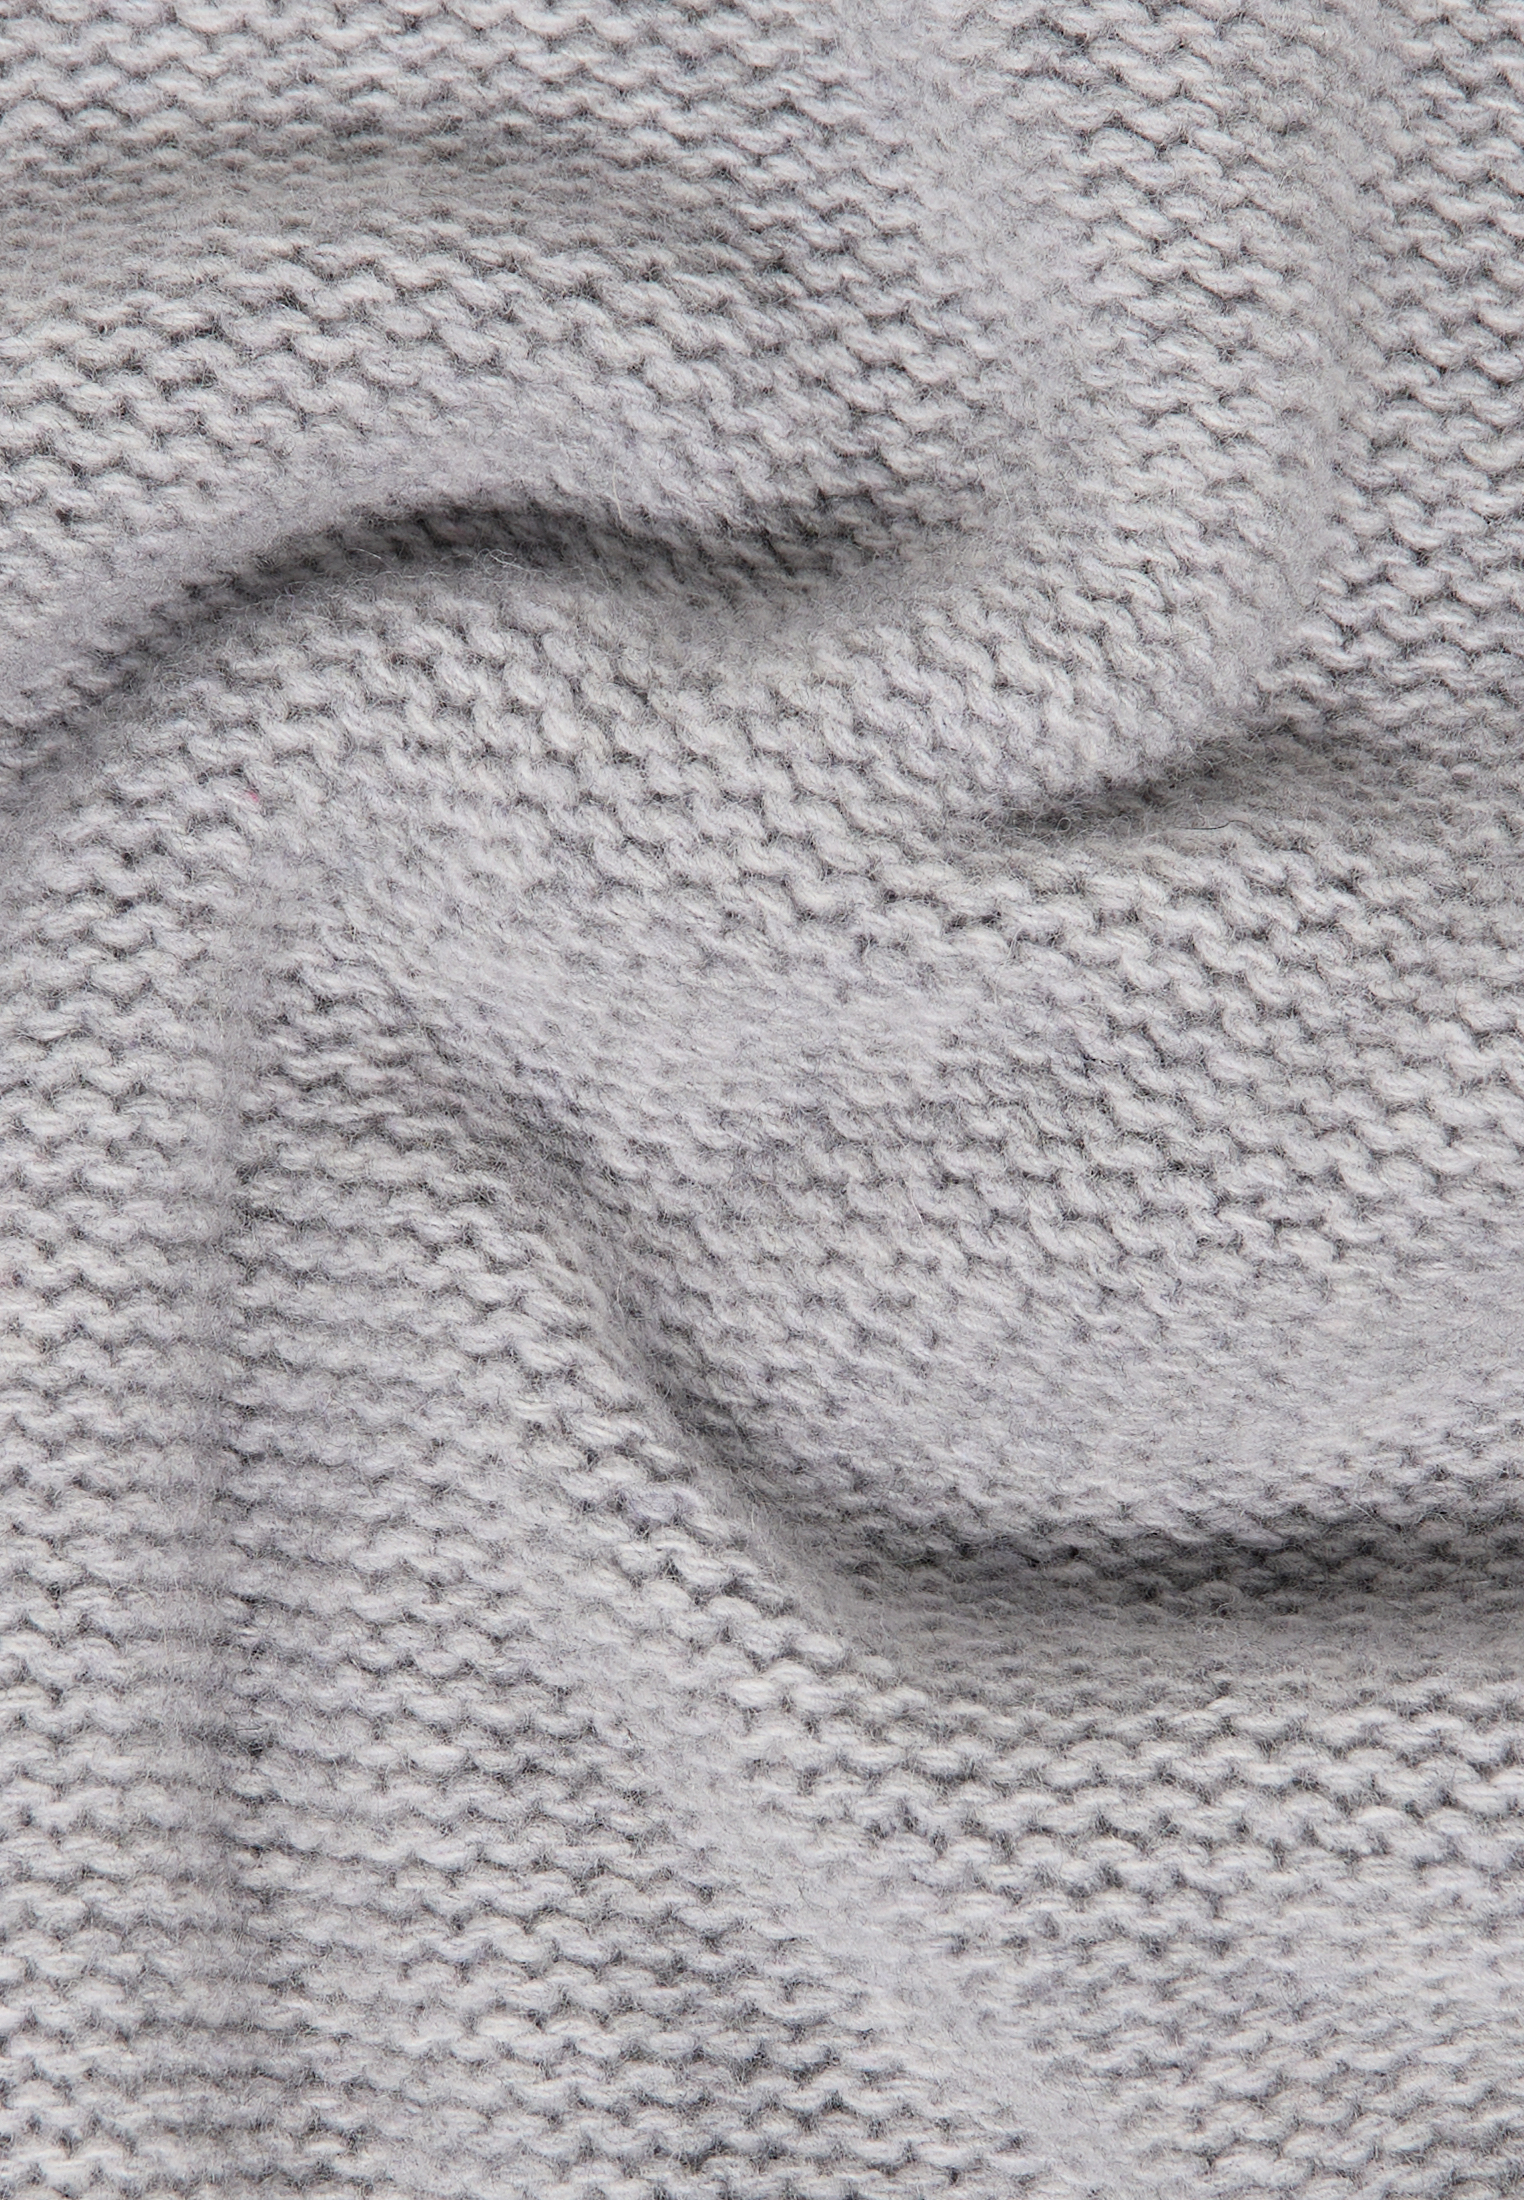 Gebreide pullover in grijs vlakte